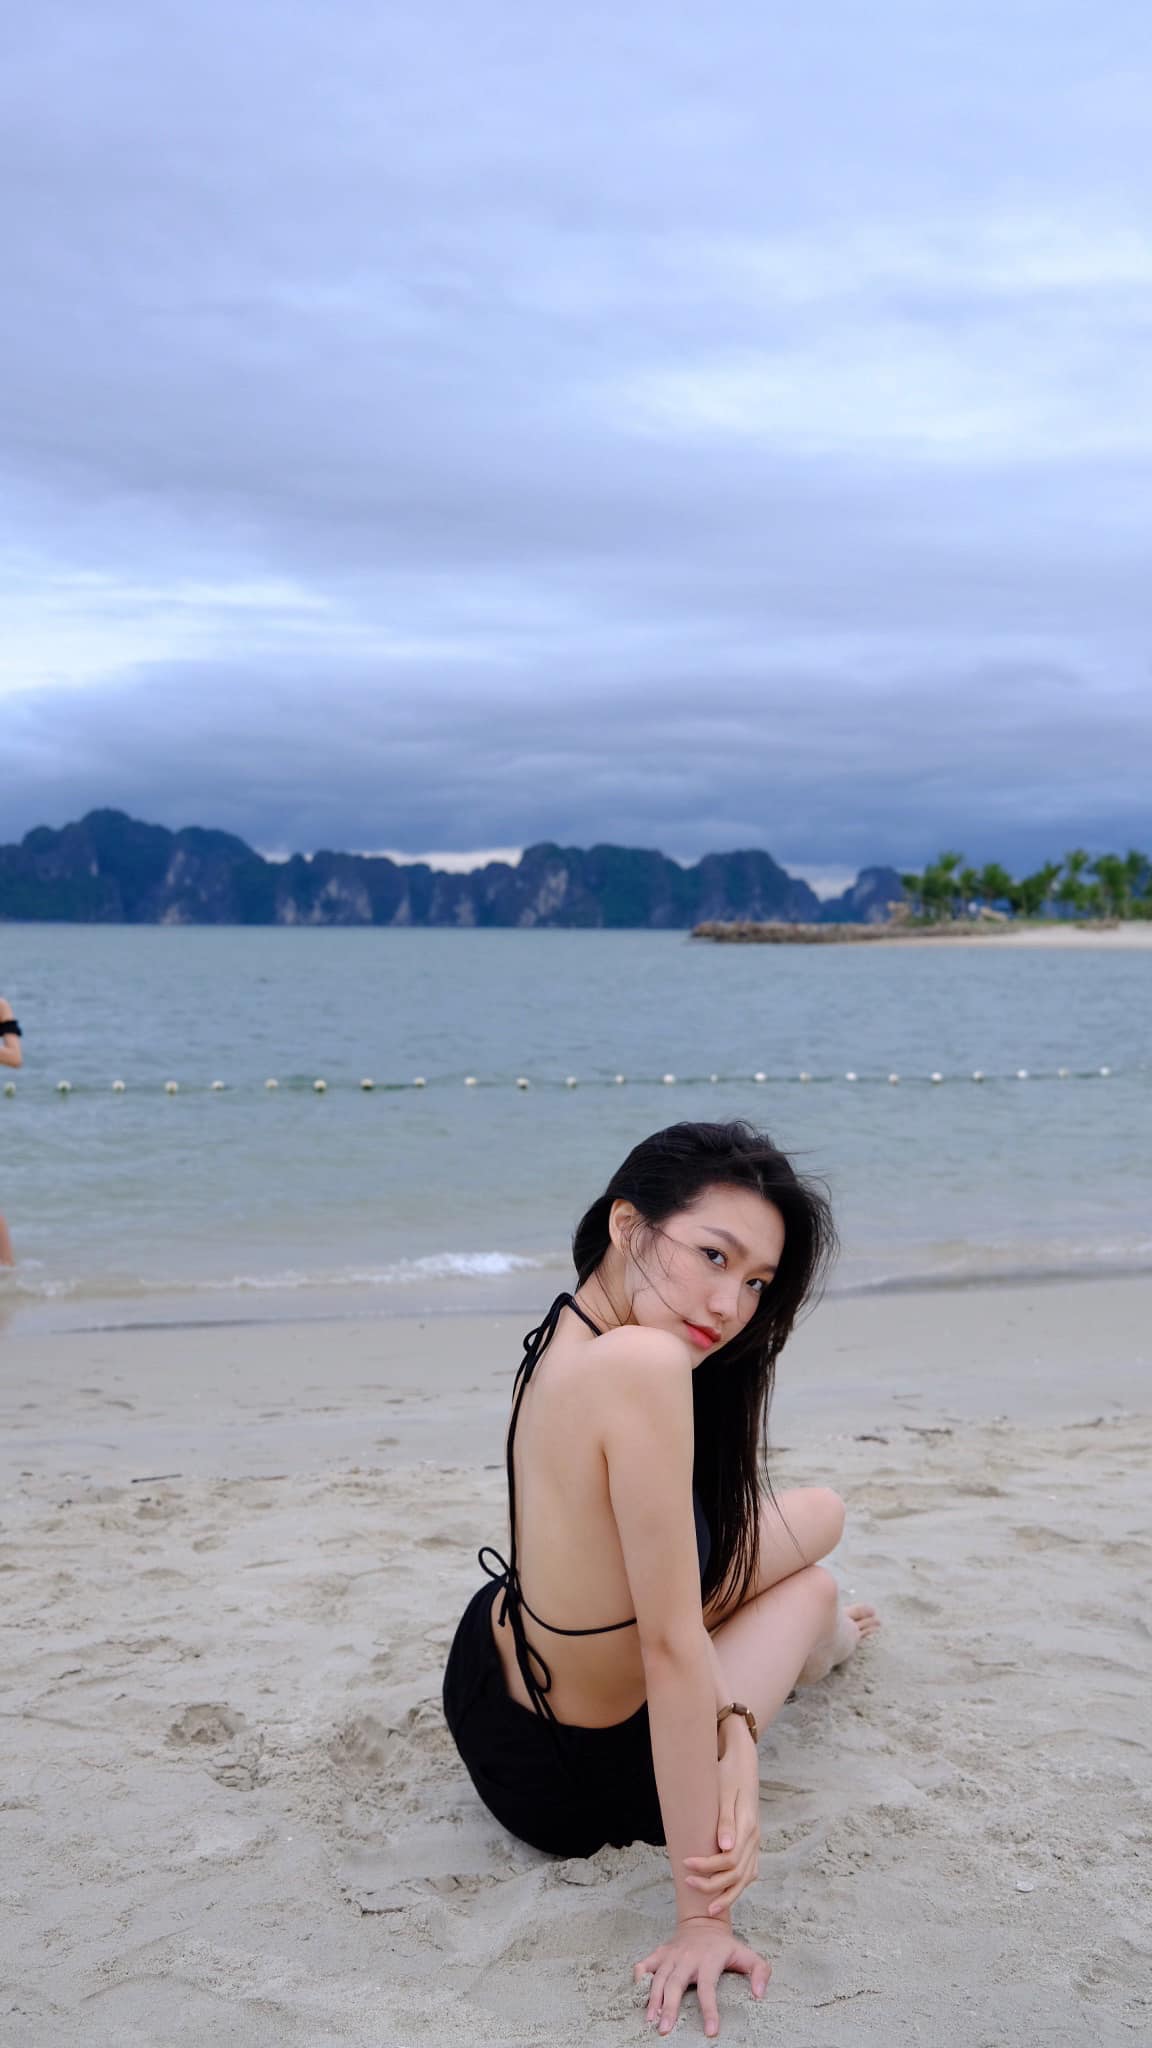 Bạn gái Đoàn Văn Hậu diện áo tắm, khoe eo 55 cm trên bãi biển - Ảnh 5